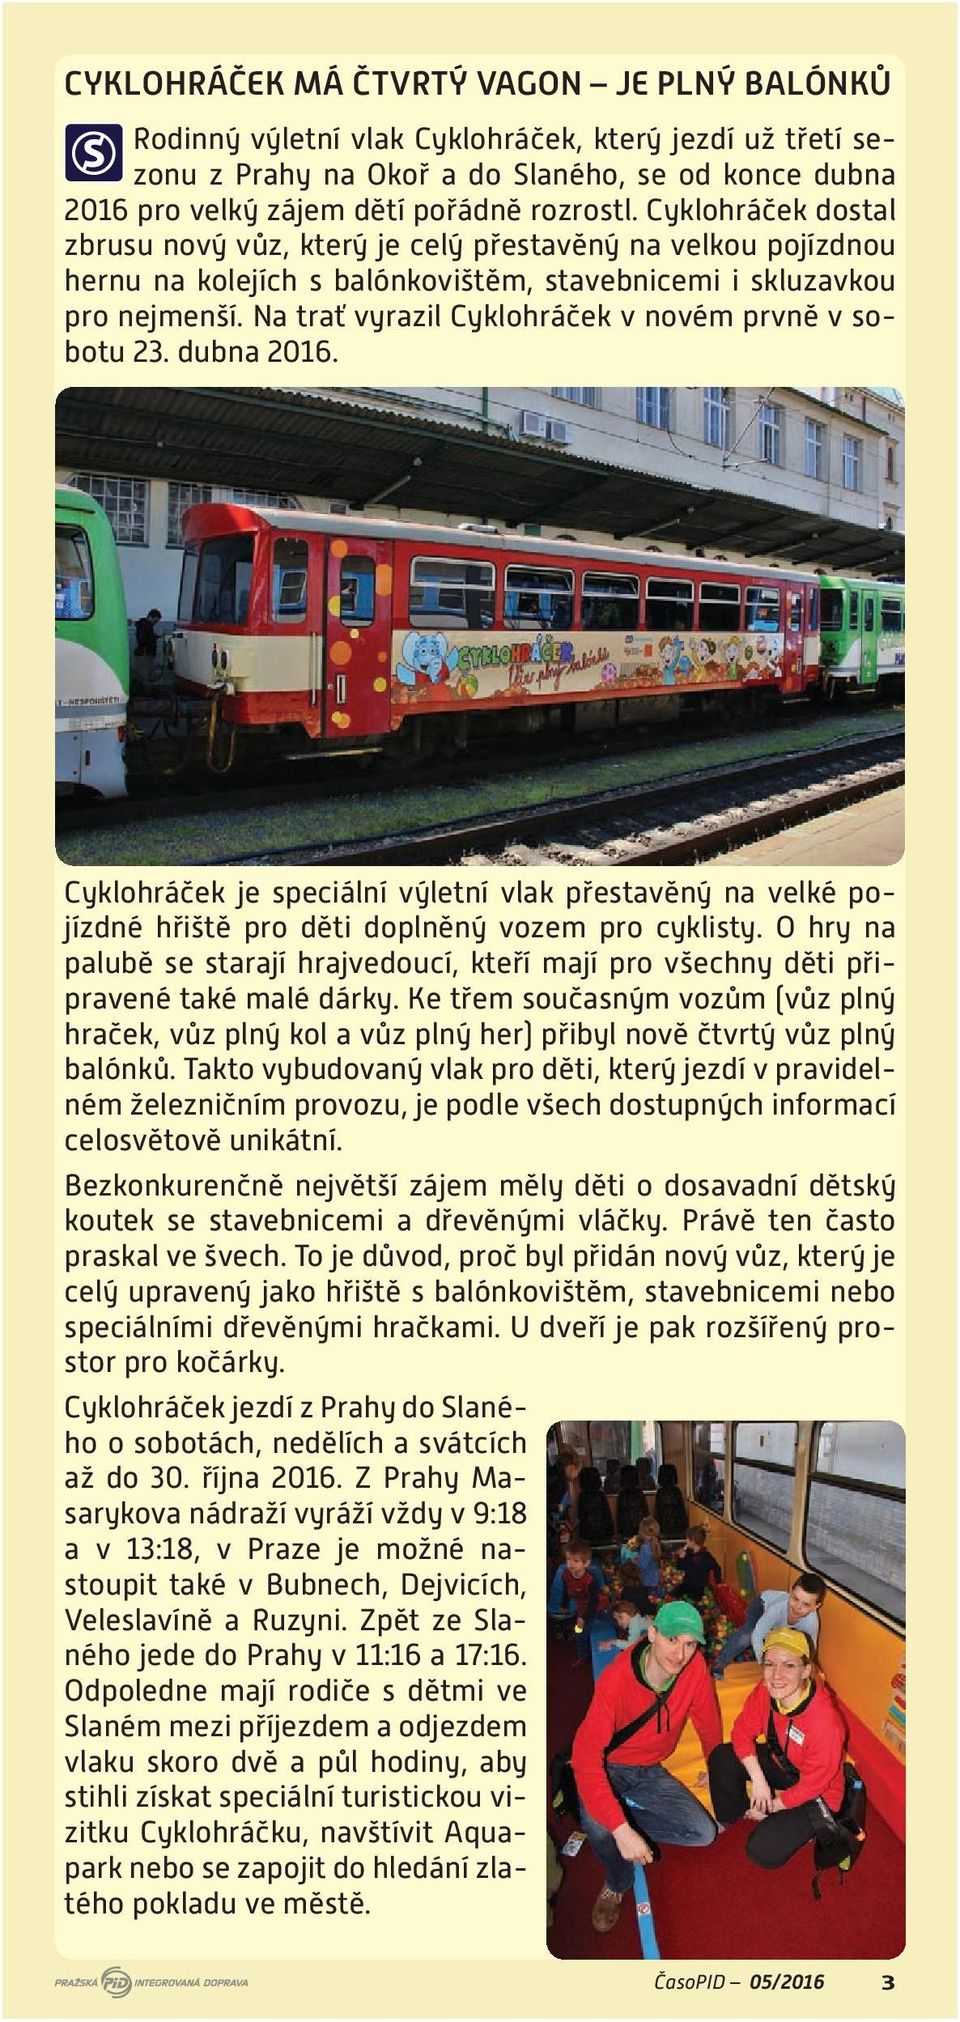 Na trať vyrazil Cyklohráček v novém prvně v sobotu 23. dubna 2016. Cyklohráček je speciální výletní vlak přestavěný na velké pojízdné hřiště pro děti doplněný vozem pro cyklisty.